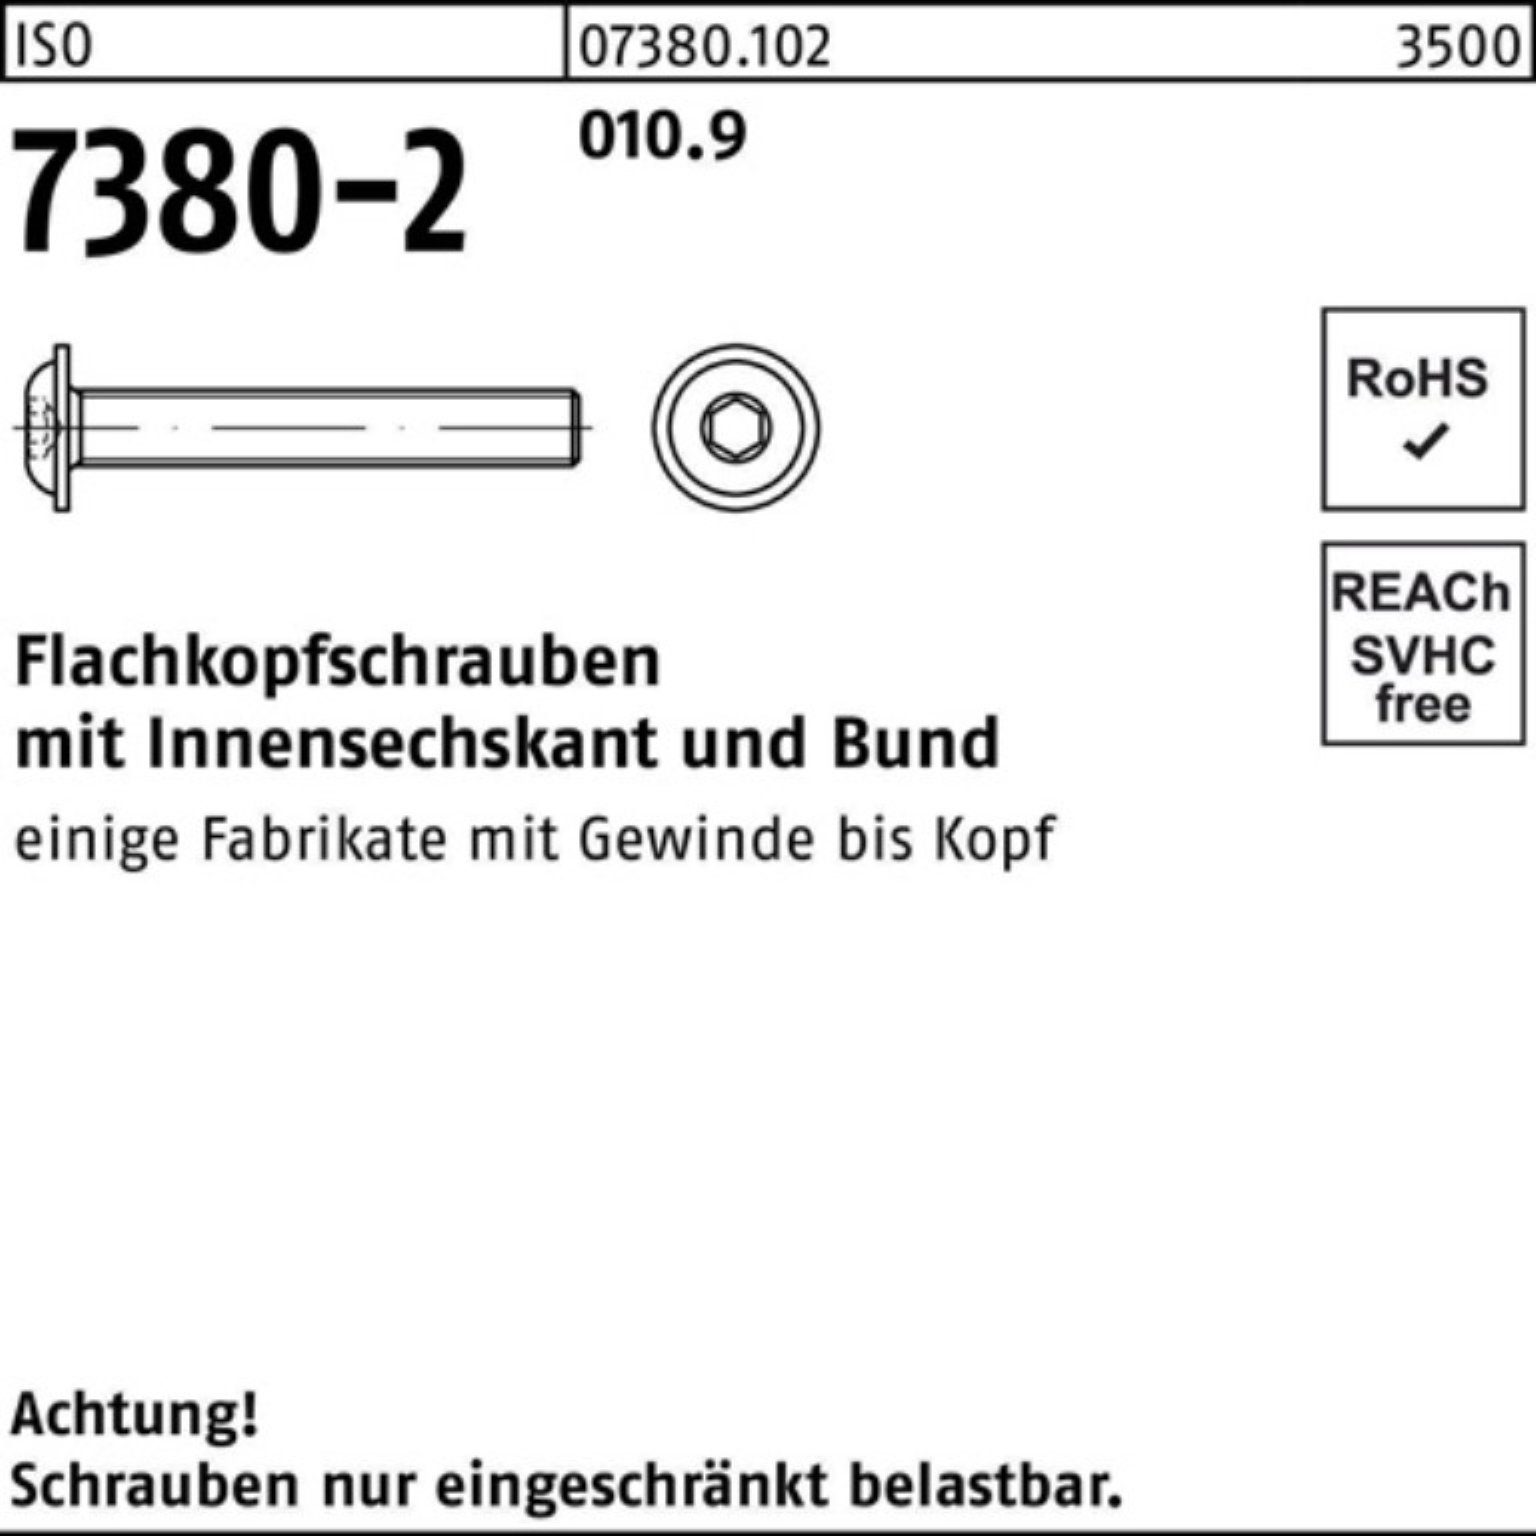 Reyher Pack Flachkopfschraube Schraube 010.9 M6x 500er 7380-2 Bund/Innen-6kt 30 50 ISO